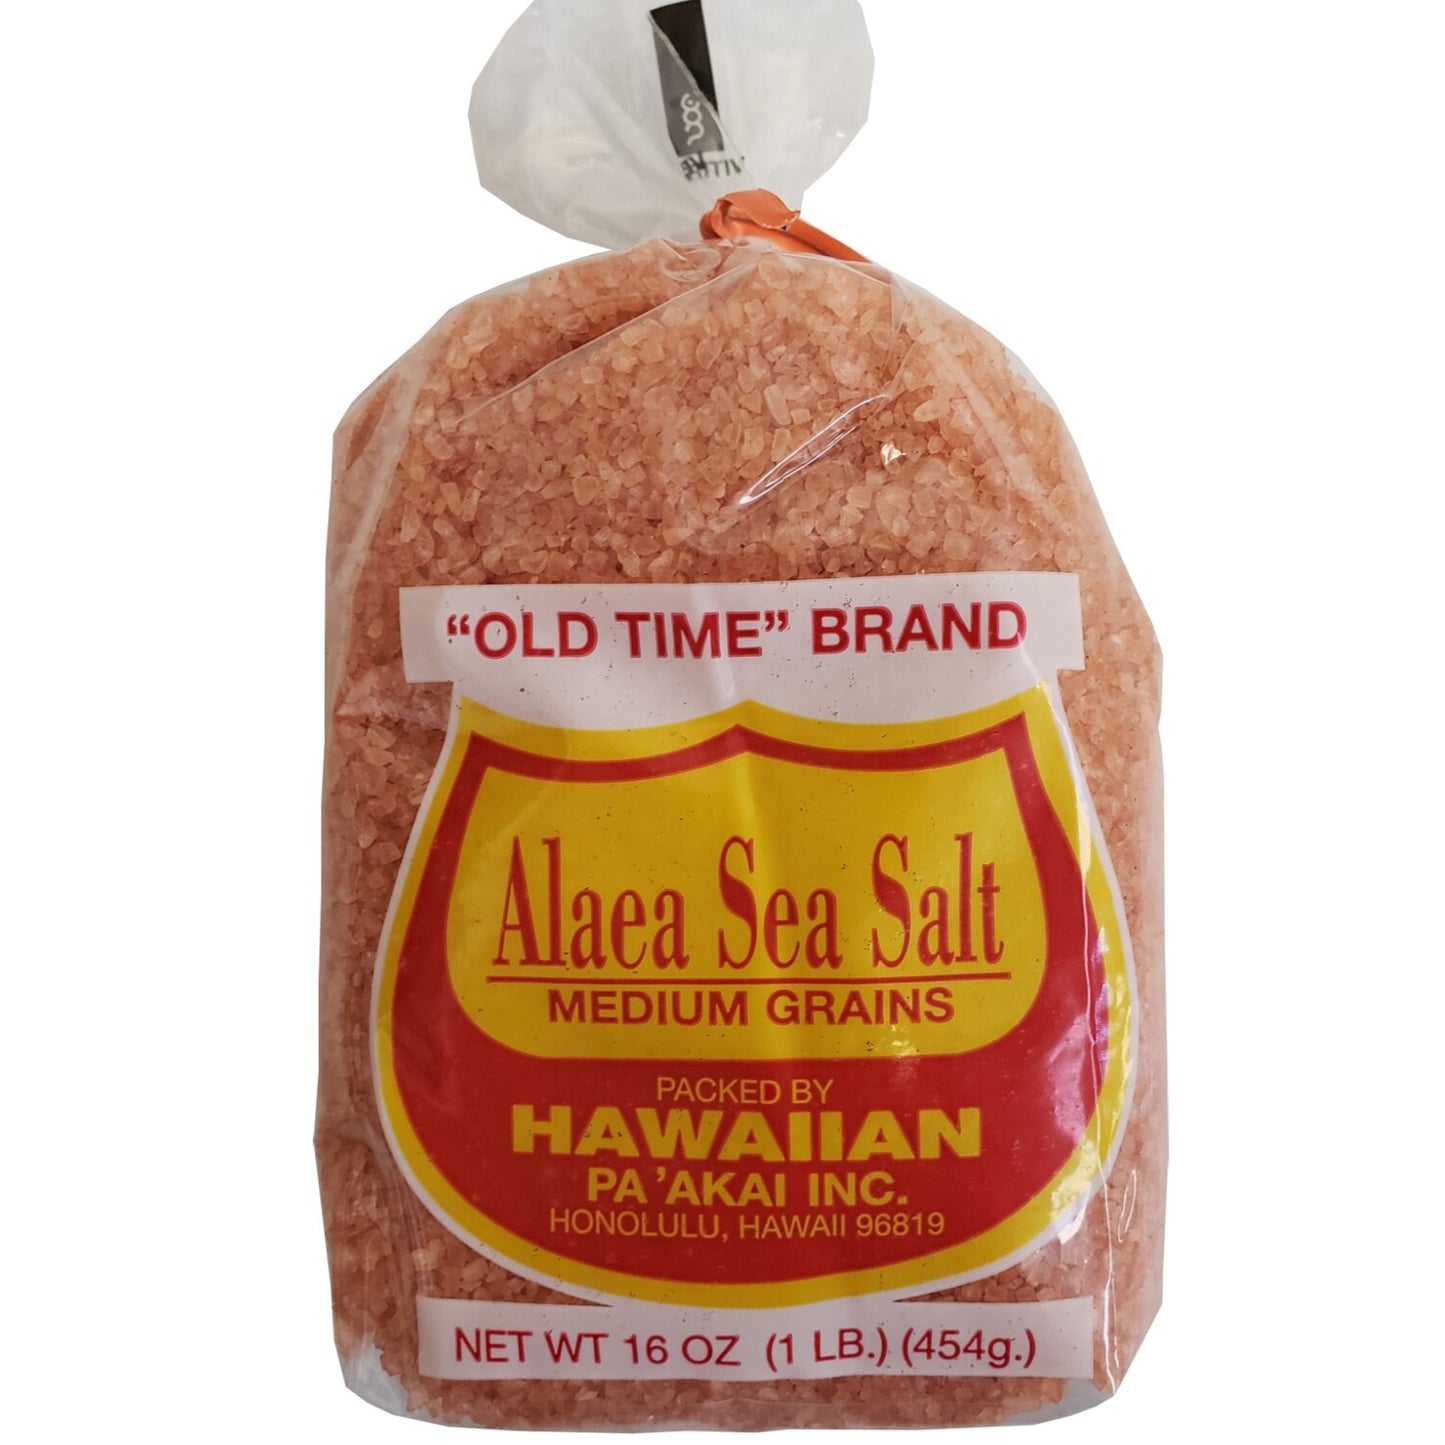 Hawaiian Pa'Akai Inc, Alaea Sea Salt Medium Grains, 16 oz